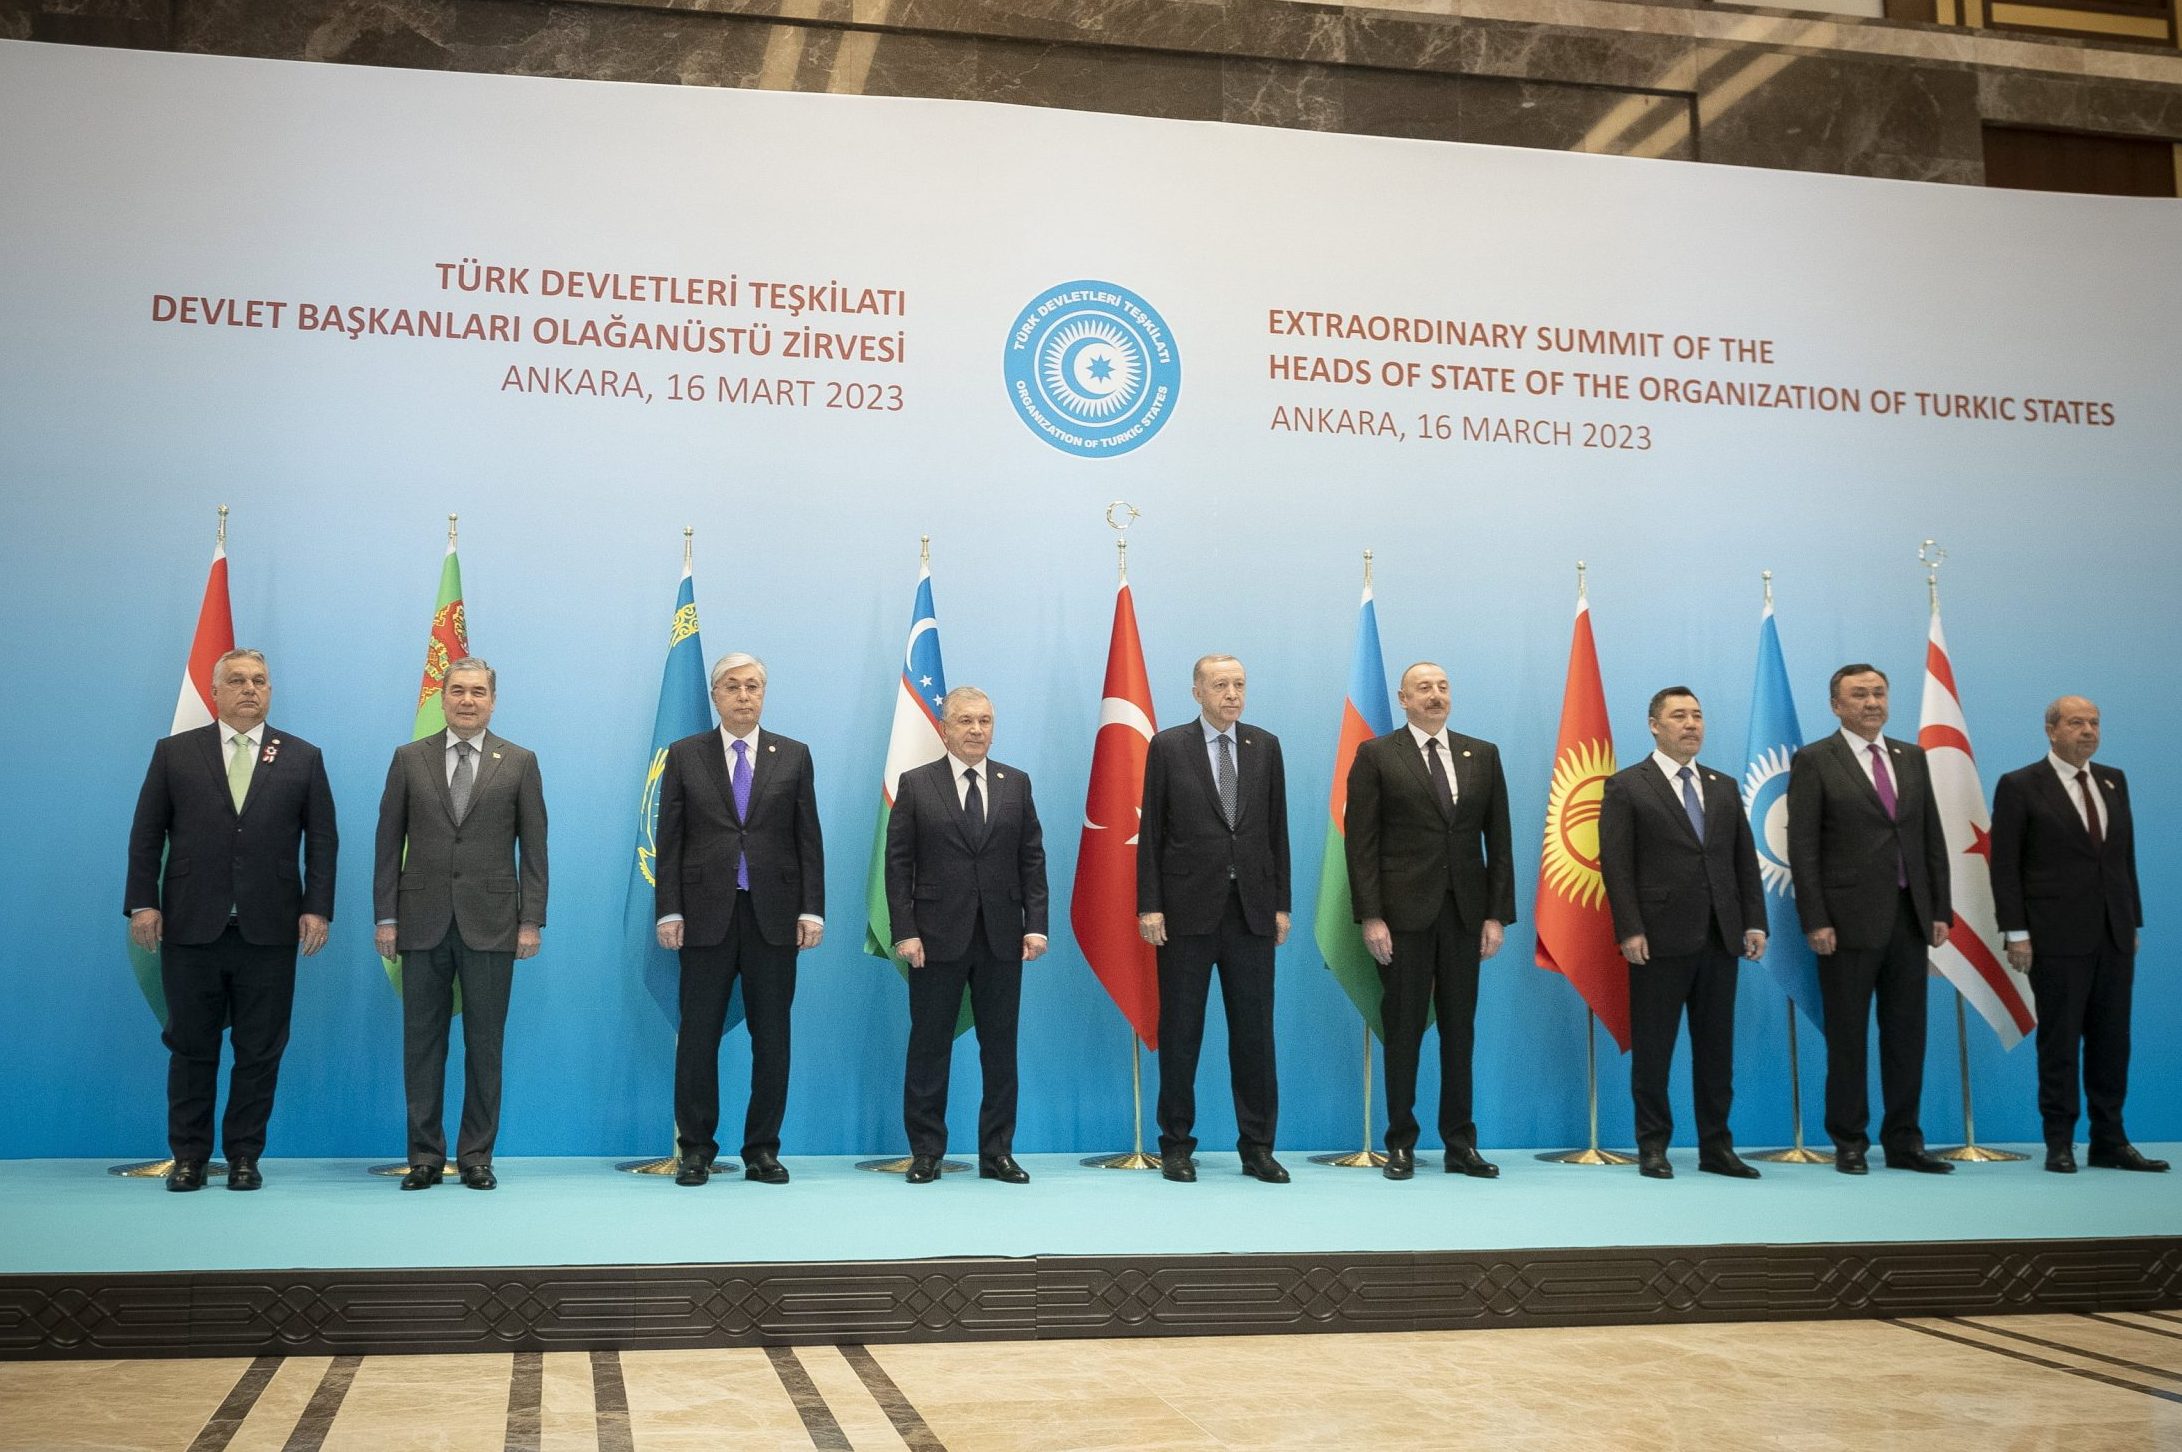 Viktor Orbán nahm am Gipfeltreffen der Organisation der Turkstaaten teil